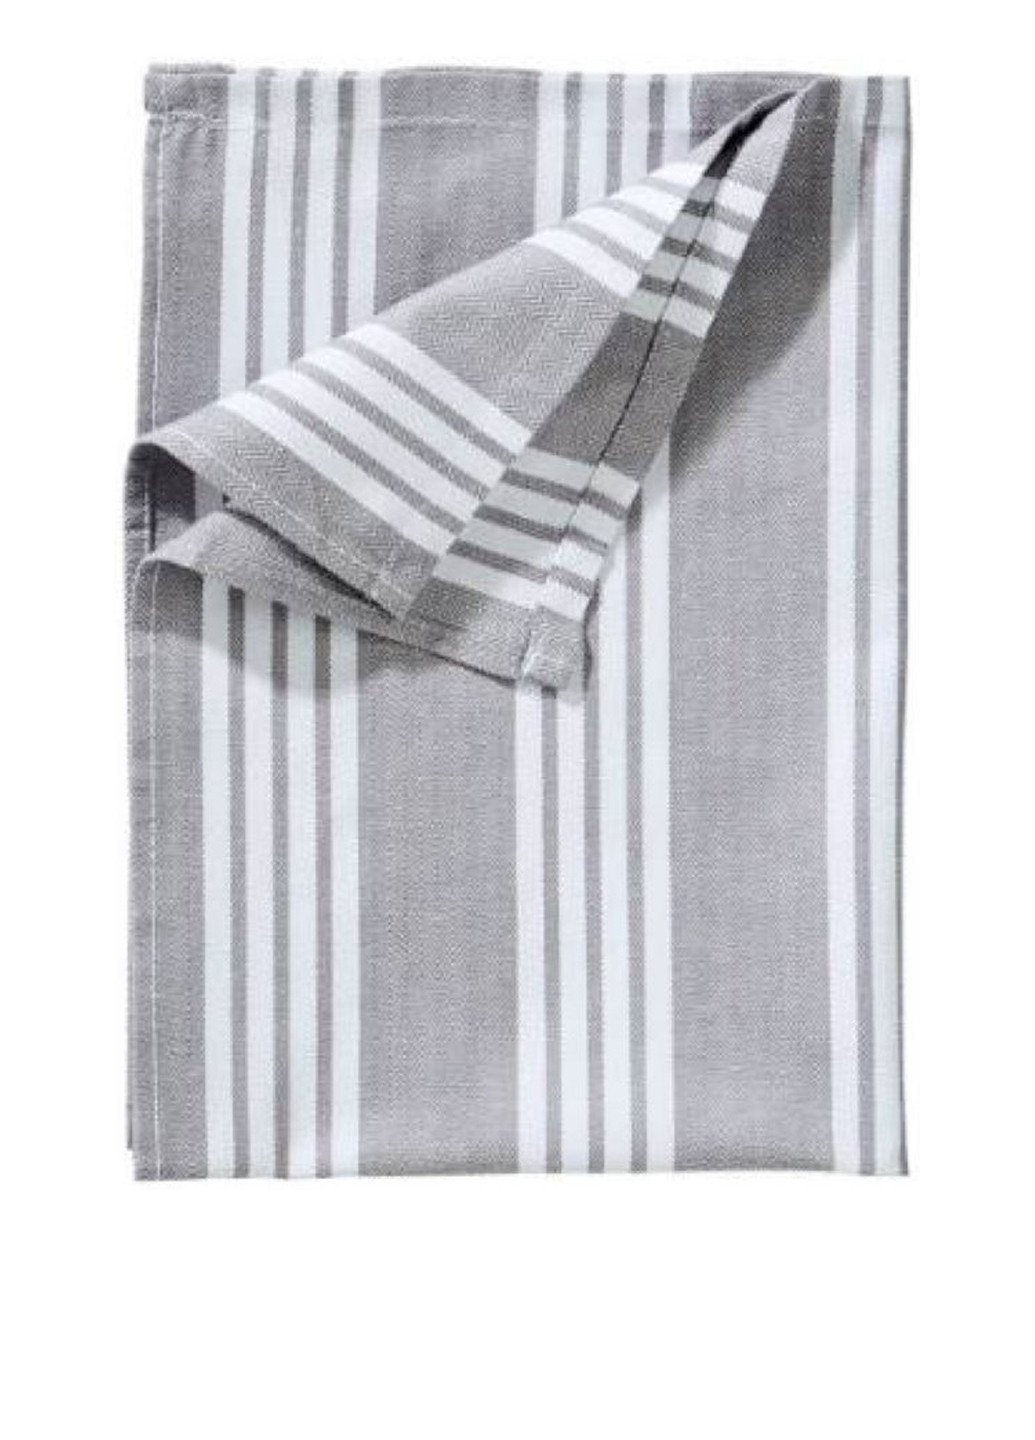 Butlers полотенце, 50x70 см полоска серый производство - Египет